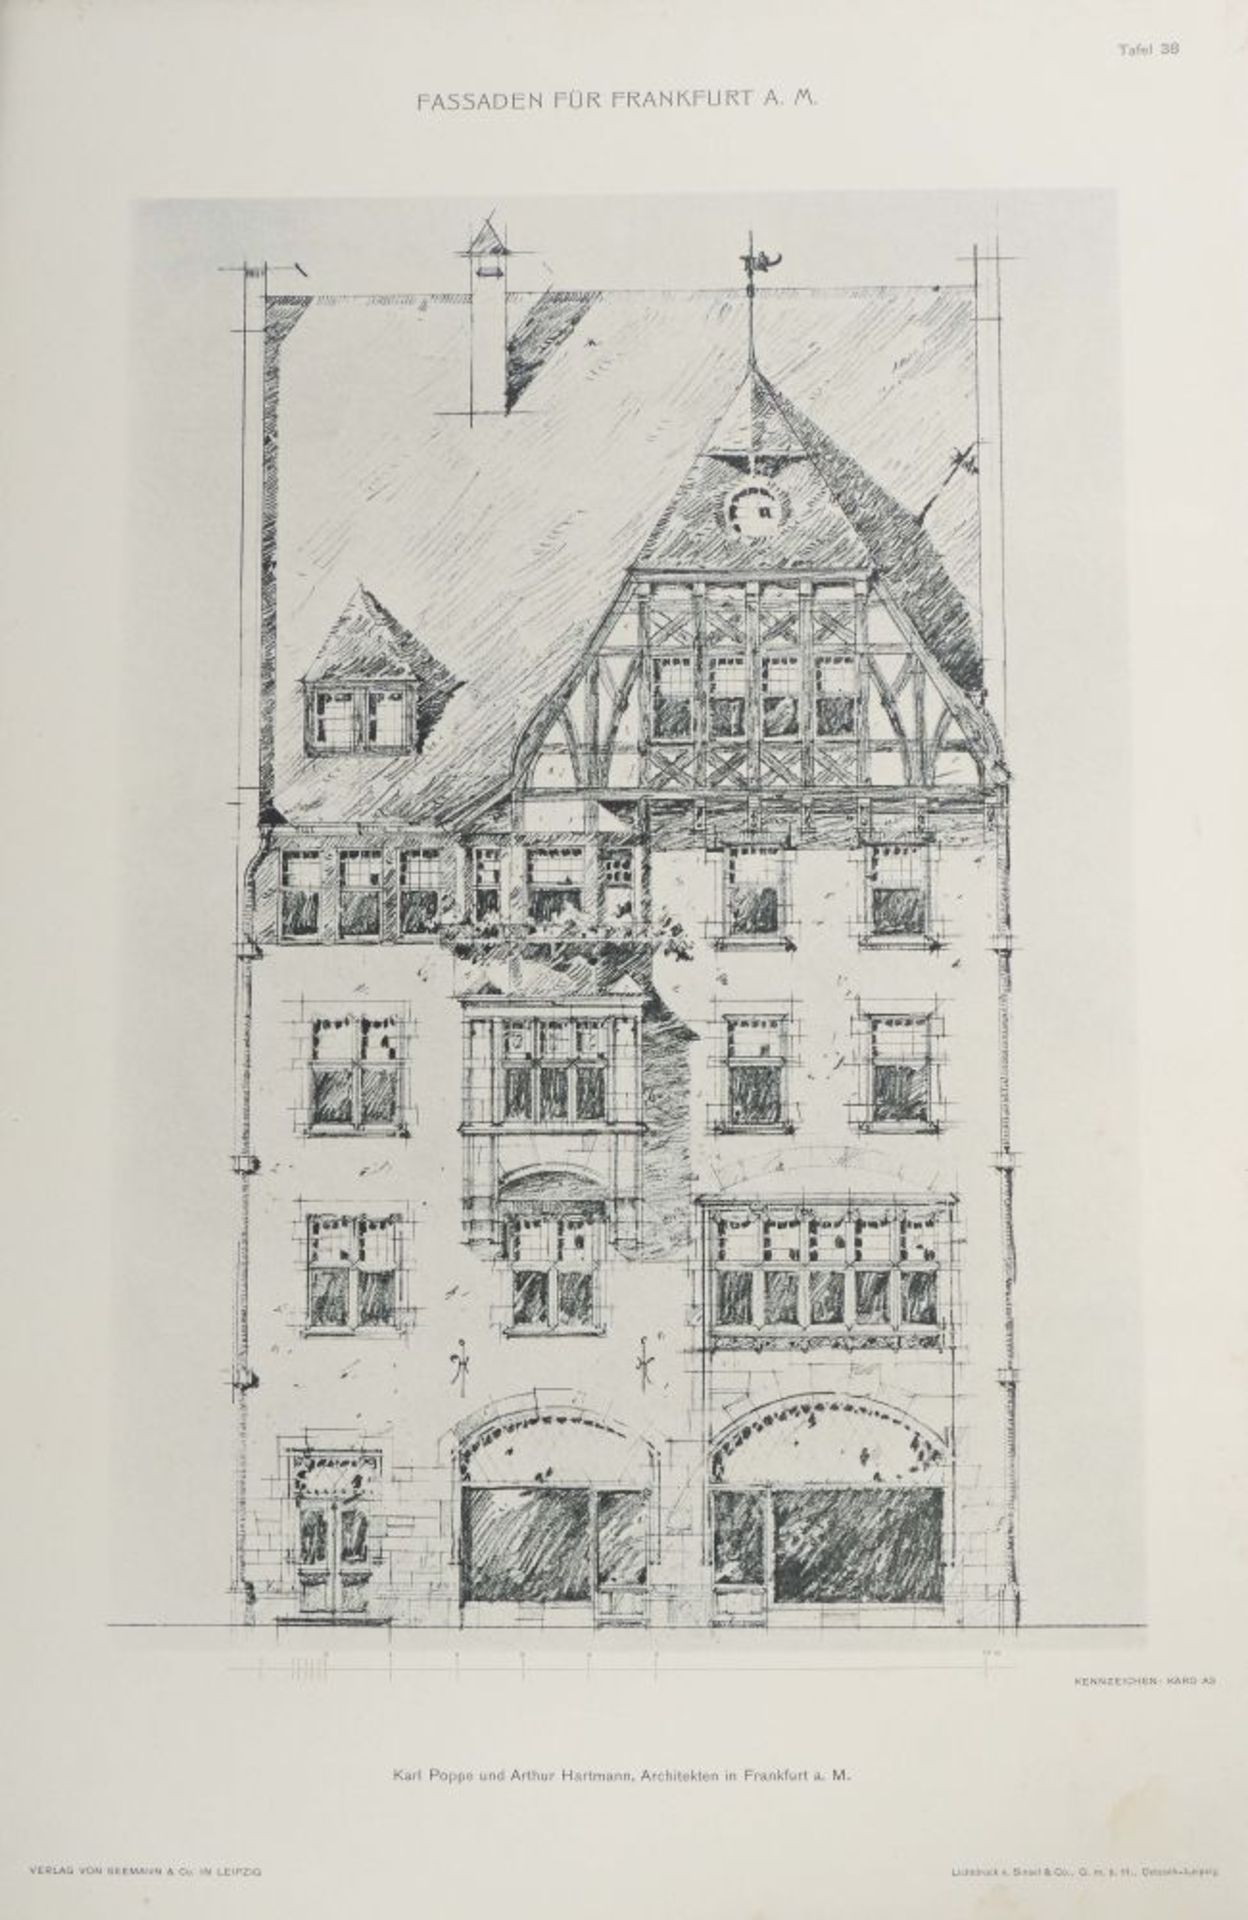 Fassaden für Frankfurt am Main 18 - Image 8 of 9